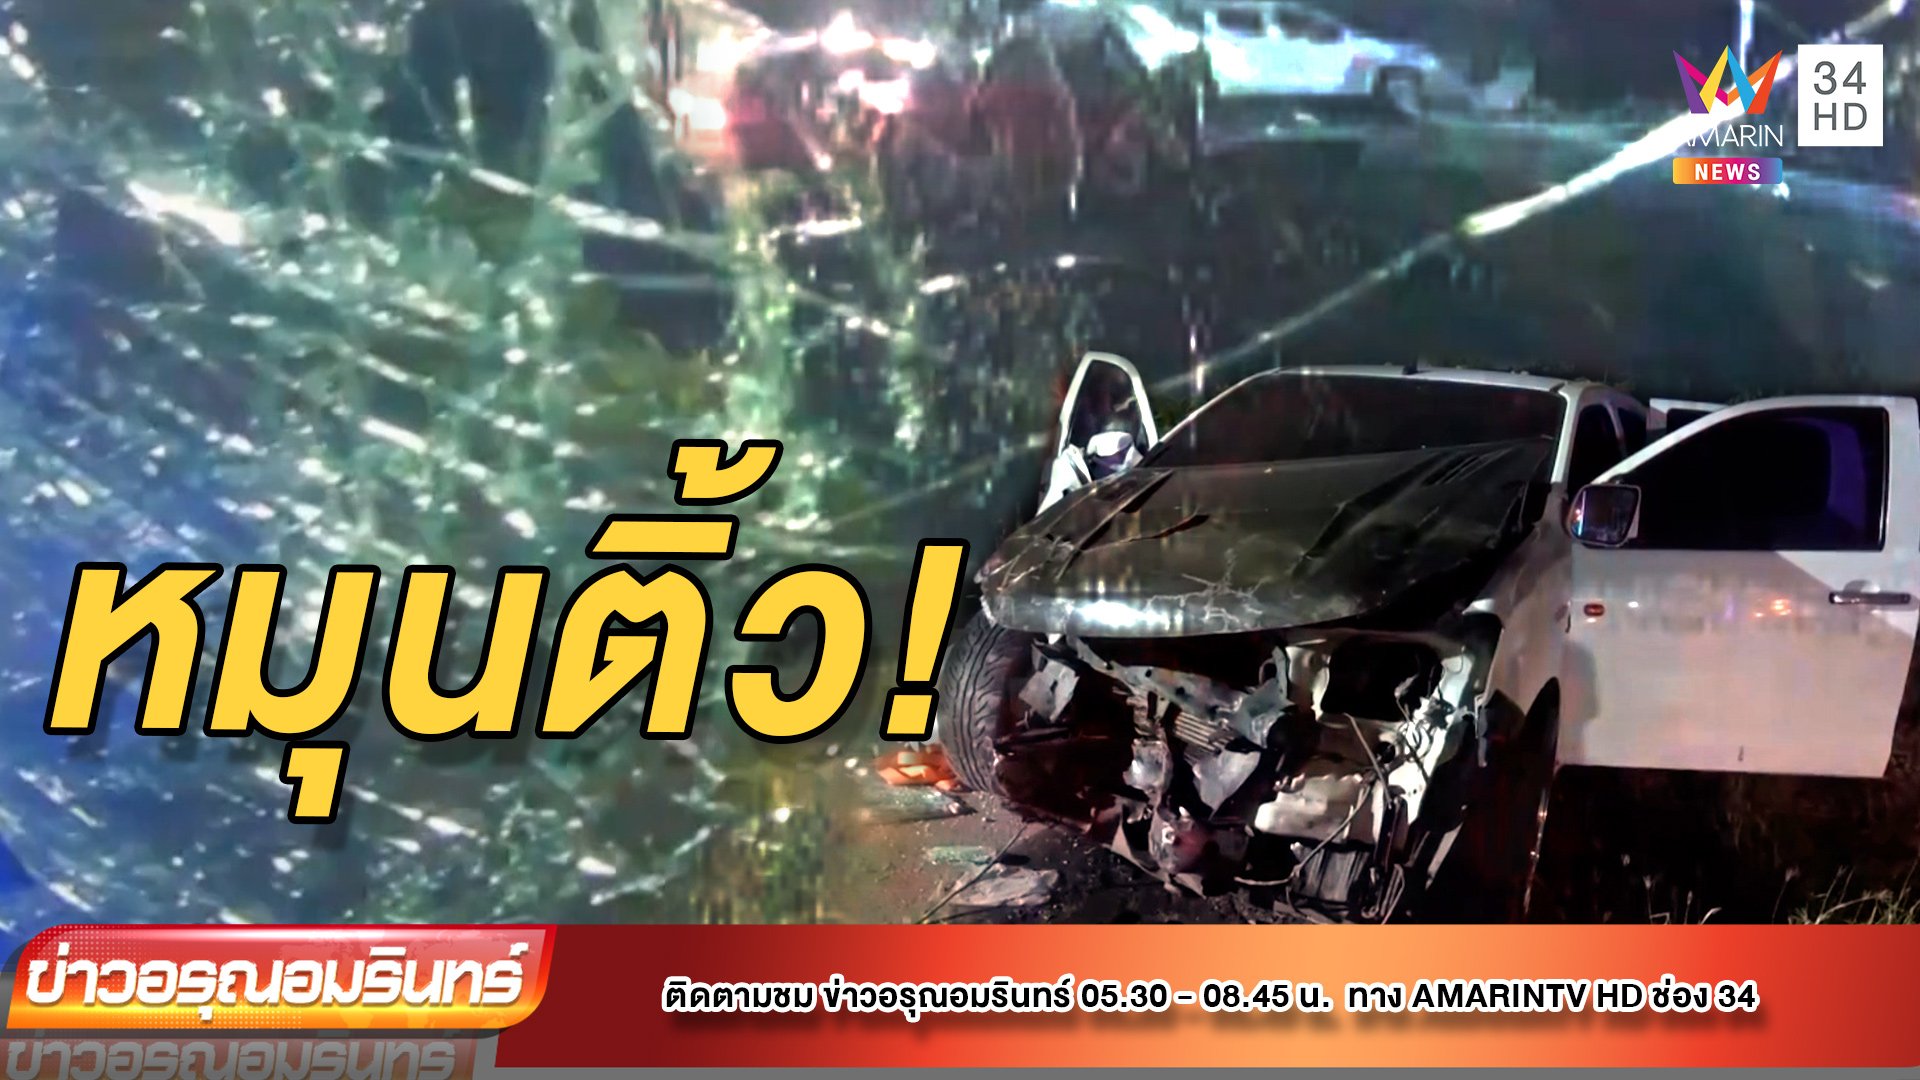 หนุ่มซิ่งกระบะเสียหลักรถหมุนชนอีกคันเจ็บ 4 | ข่าวอรุณอมรินทร์ | 17 ม.ค. 65 | AMARIN TVHD34